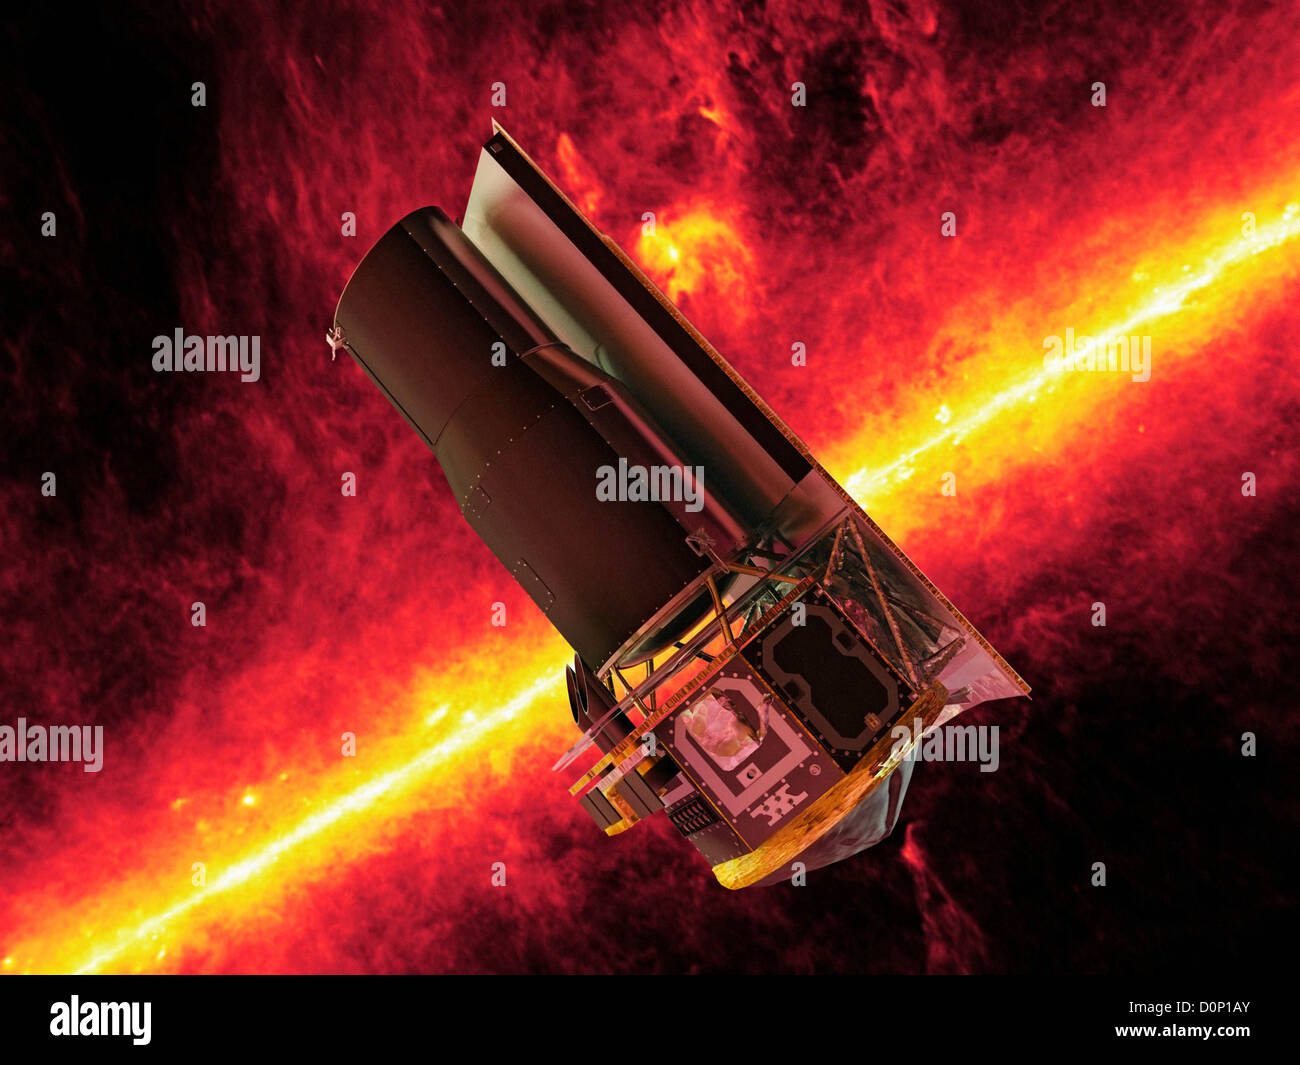 Telescopio spaziale Spitzer Foto Stock